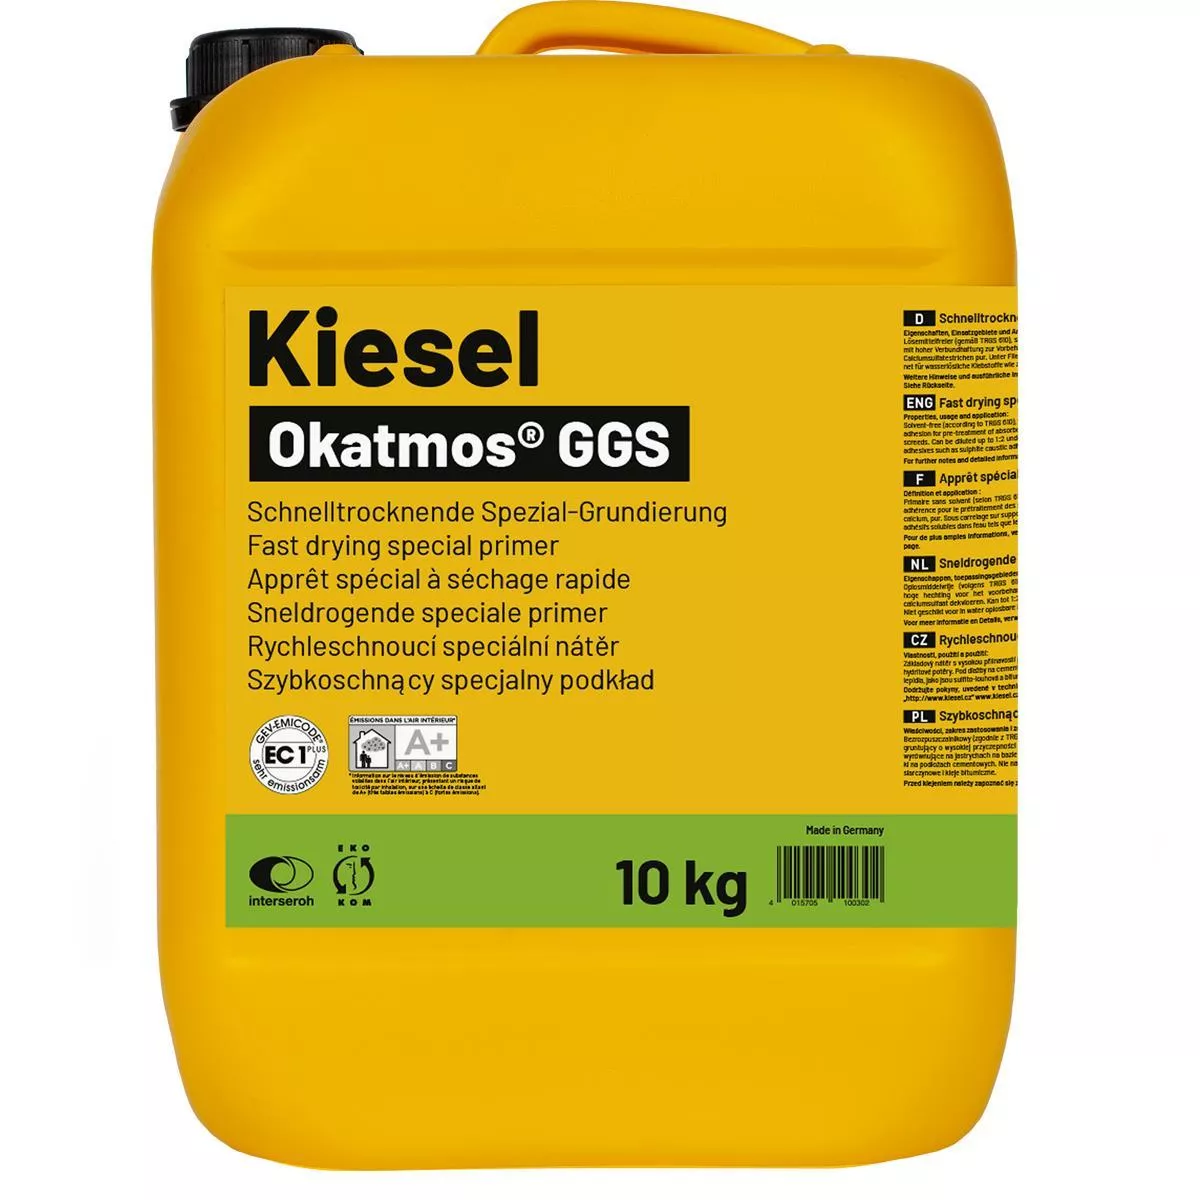 Specialprimer Okatmos GGS 10 kg